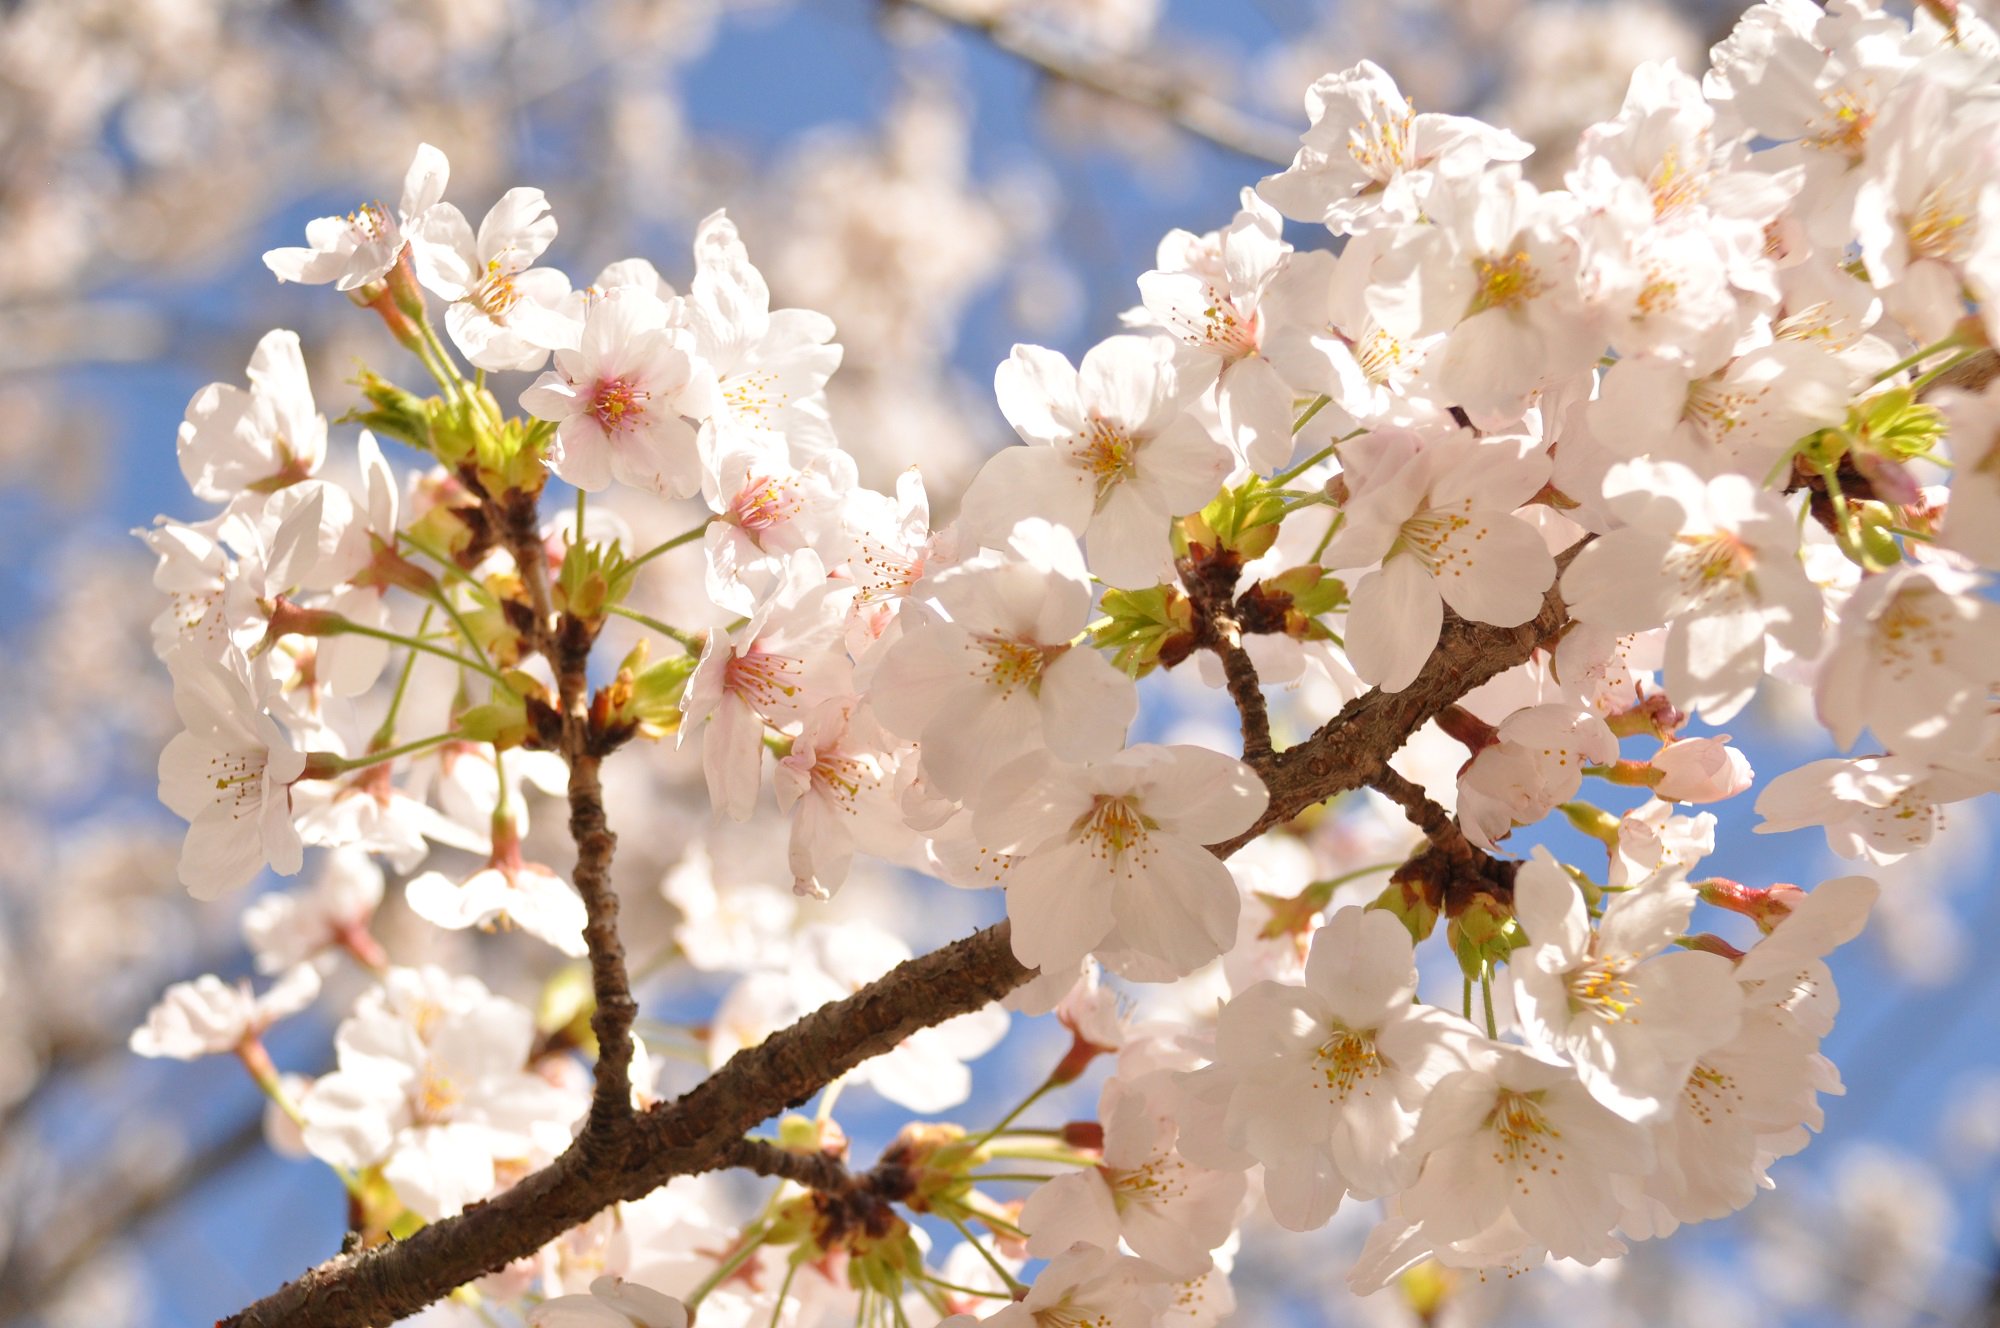 日立市 公式 さくら の開花予想 日立市 天気相談所によると今年の平和通りの ソメイヨシノ の開花日は 最近１０年間の平均よりやや早い３月２９日 満開日は４月５日頃の見込みです さくら開花予想 桜開花予想 桜 T Co 2votn5vogm